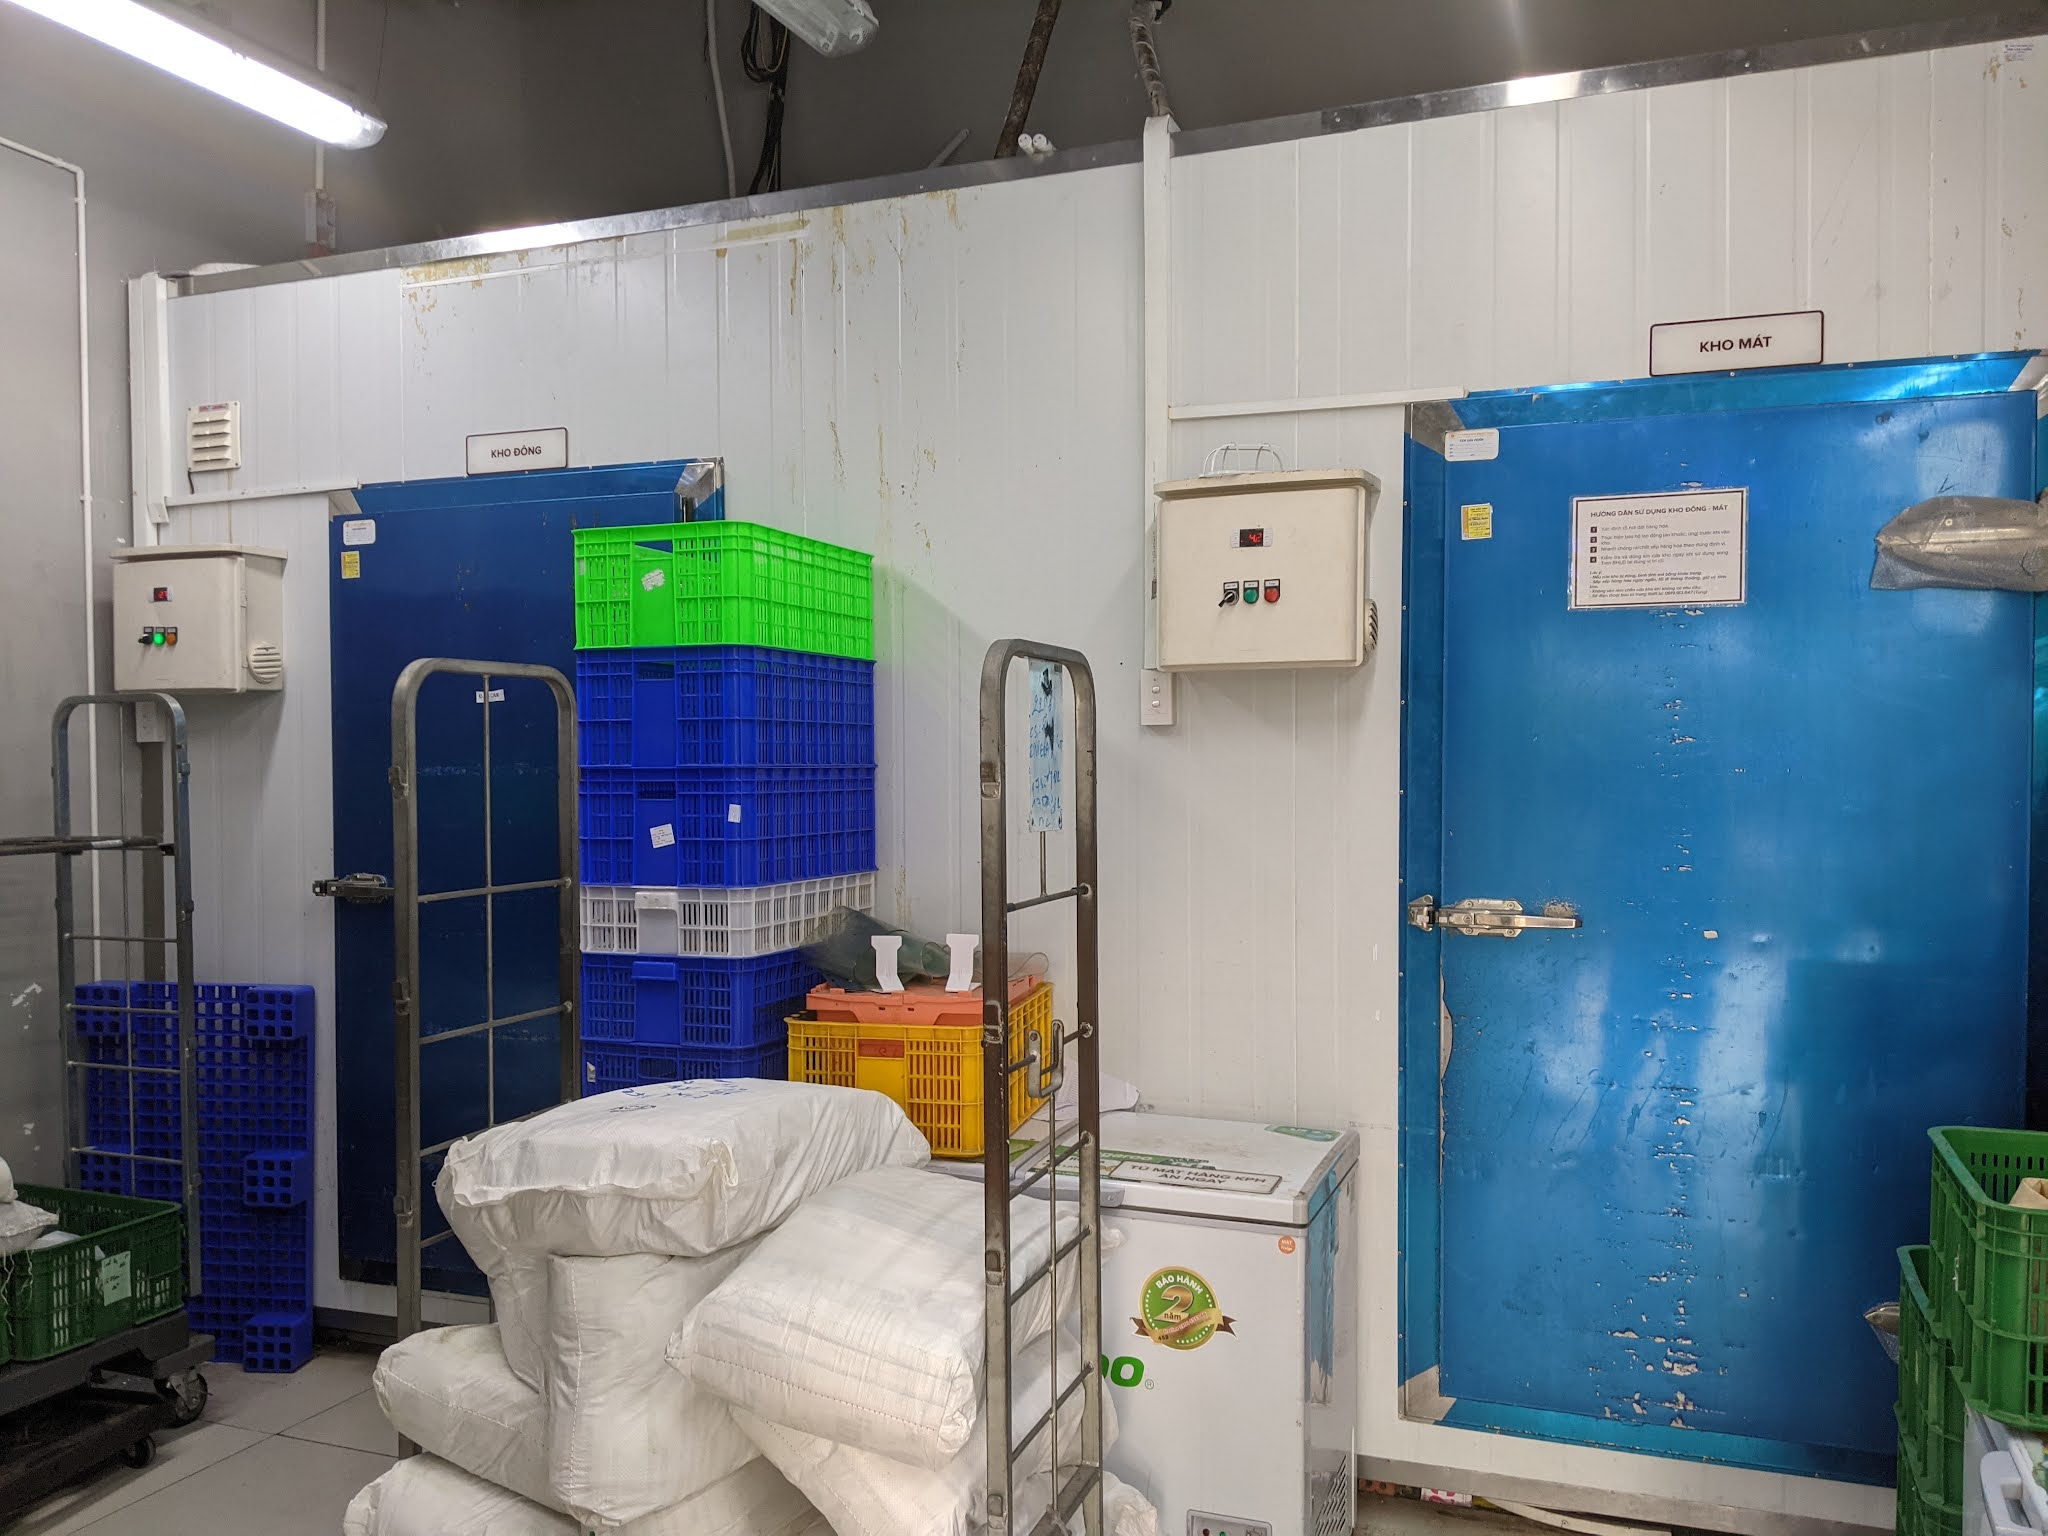 Sửa chữa kho mát bảo quản lạnh tại TP Hồ Chí Minh